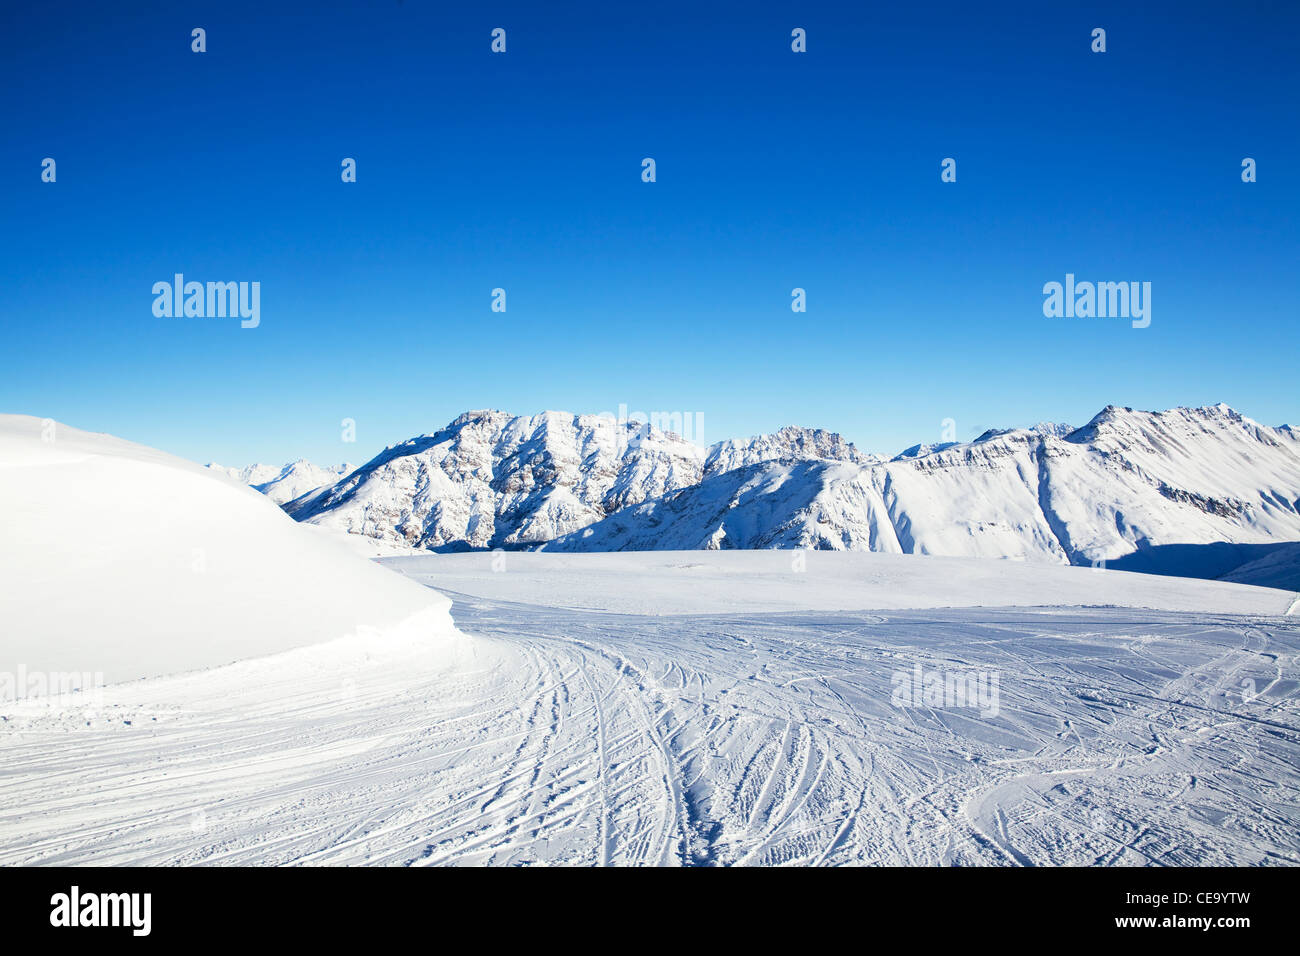 Le point de vue de l'hiver, les montagnes couvertes de neige, pente de ski sur l'avant-plan Banque D'Images